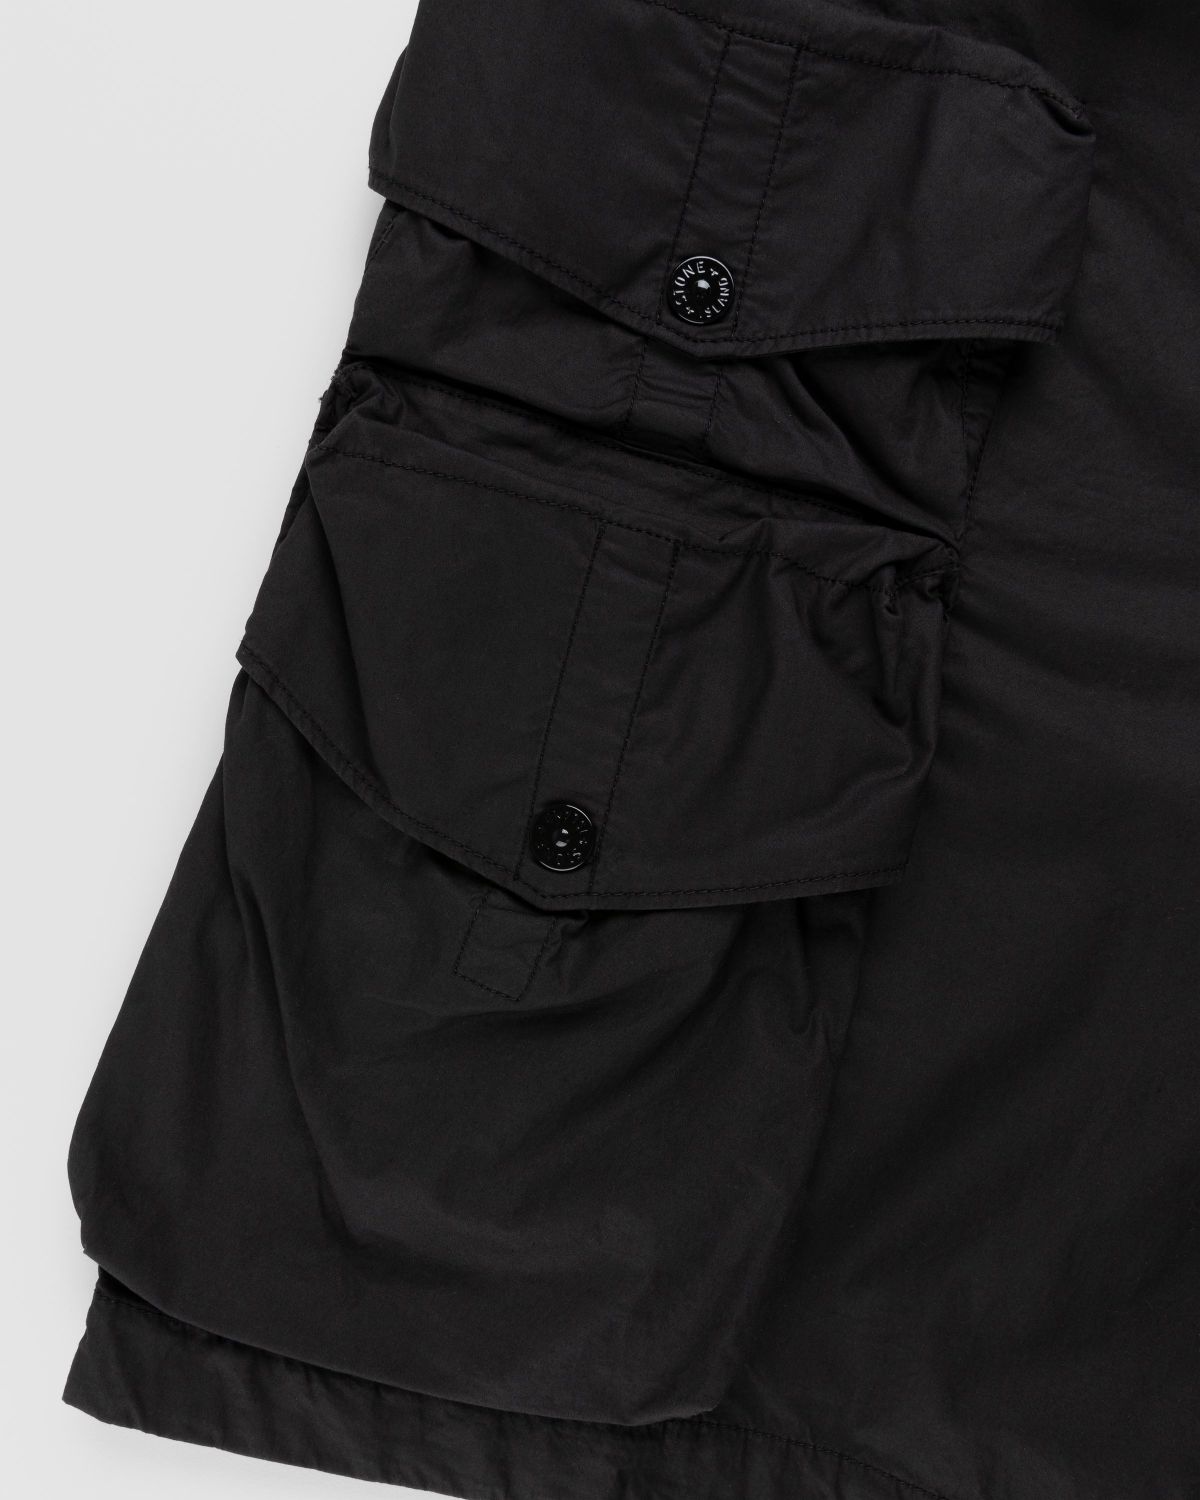 Stone Island – L0103 Garment-Dyed Shorts Black - Shorts - Black - Image 6